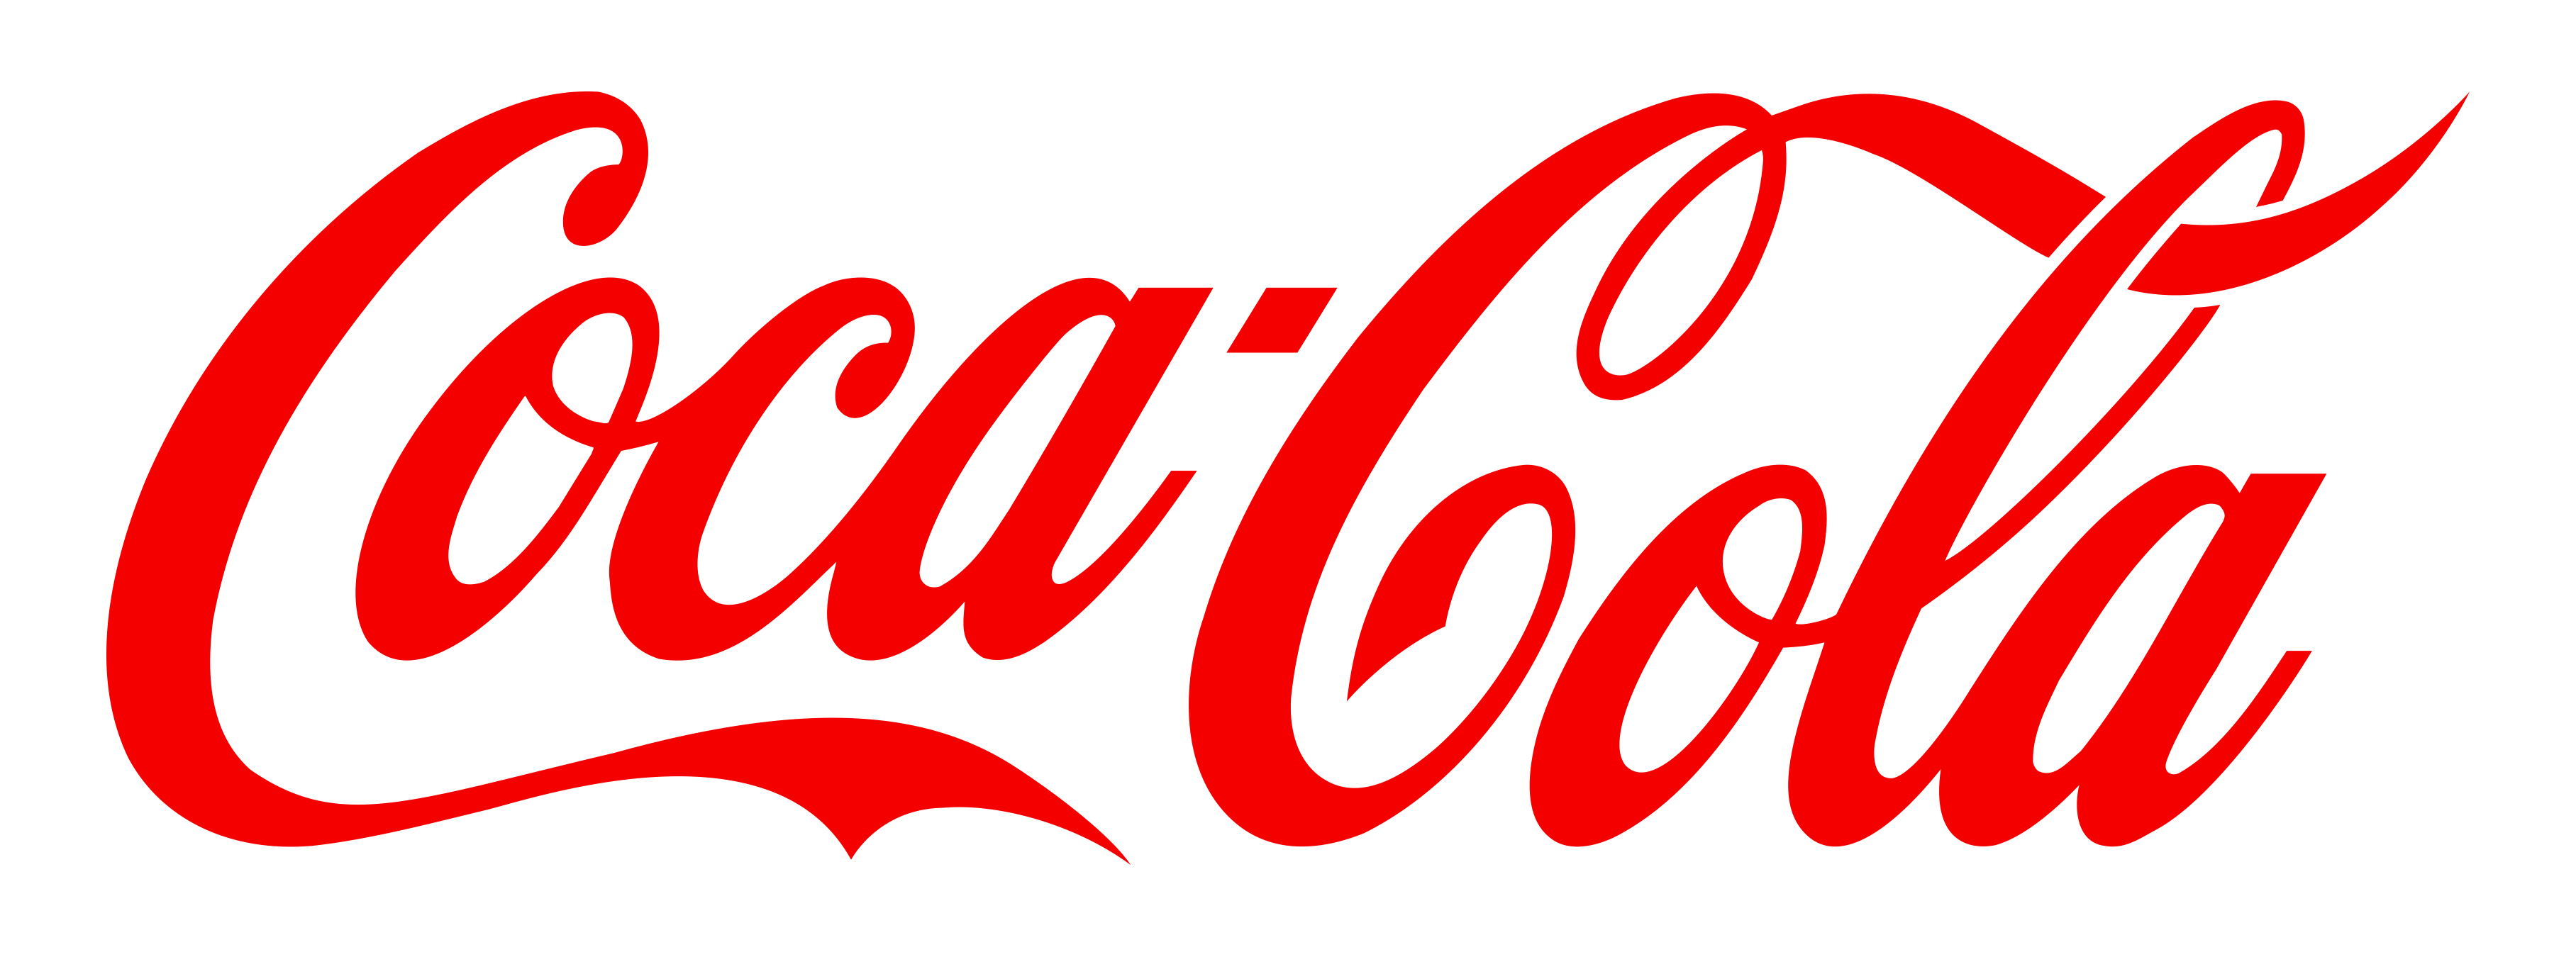 Coca Cola Png - Coca Cola Logo Png Transparent, Transparent background PNG HD thumbnail